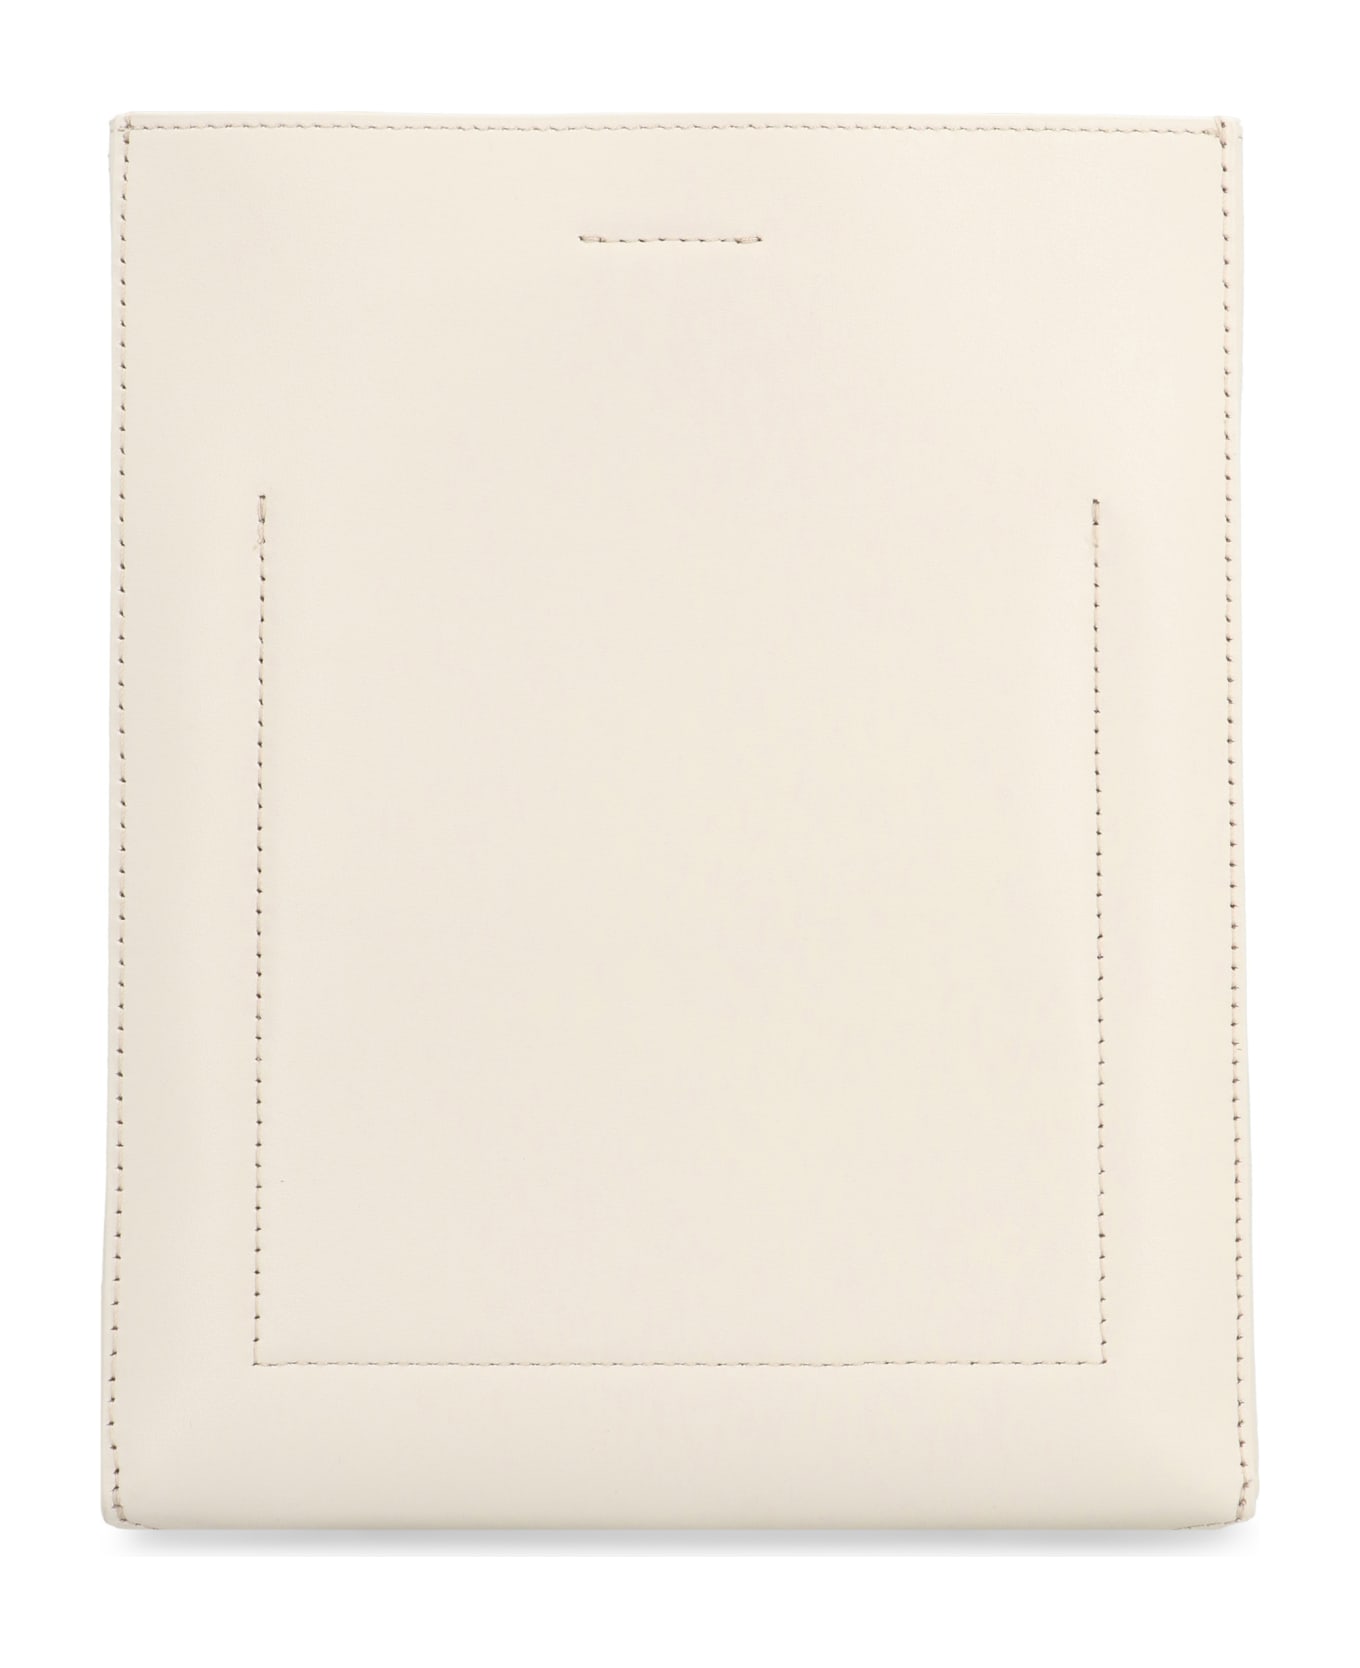 Calvin Klein Leather Crossbody Bag - White クラッチバッグ